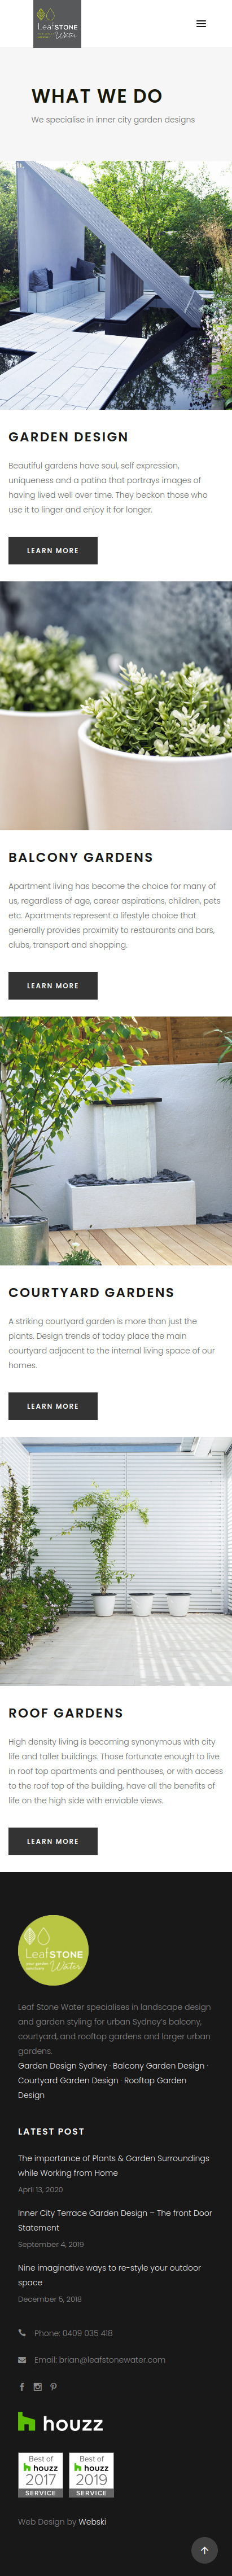 web-design-for-garden-designer